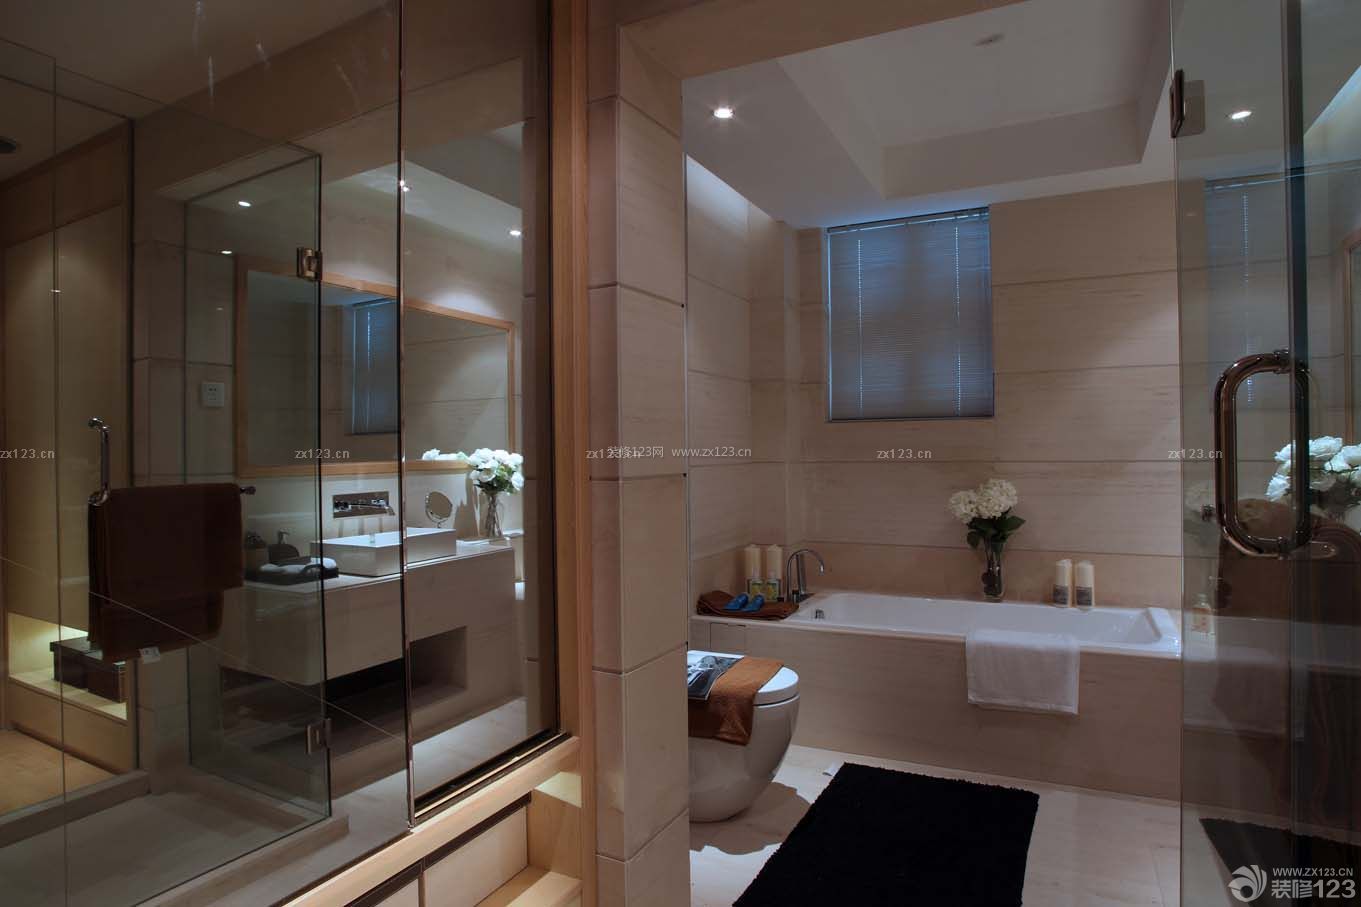 2014卫生间白色浴缸设计图欣赏